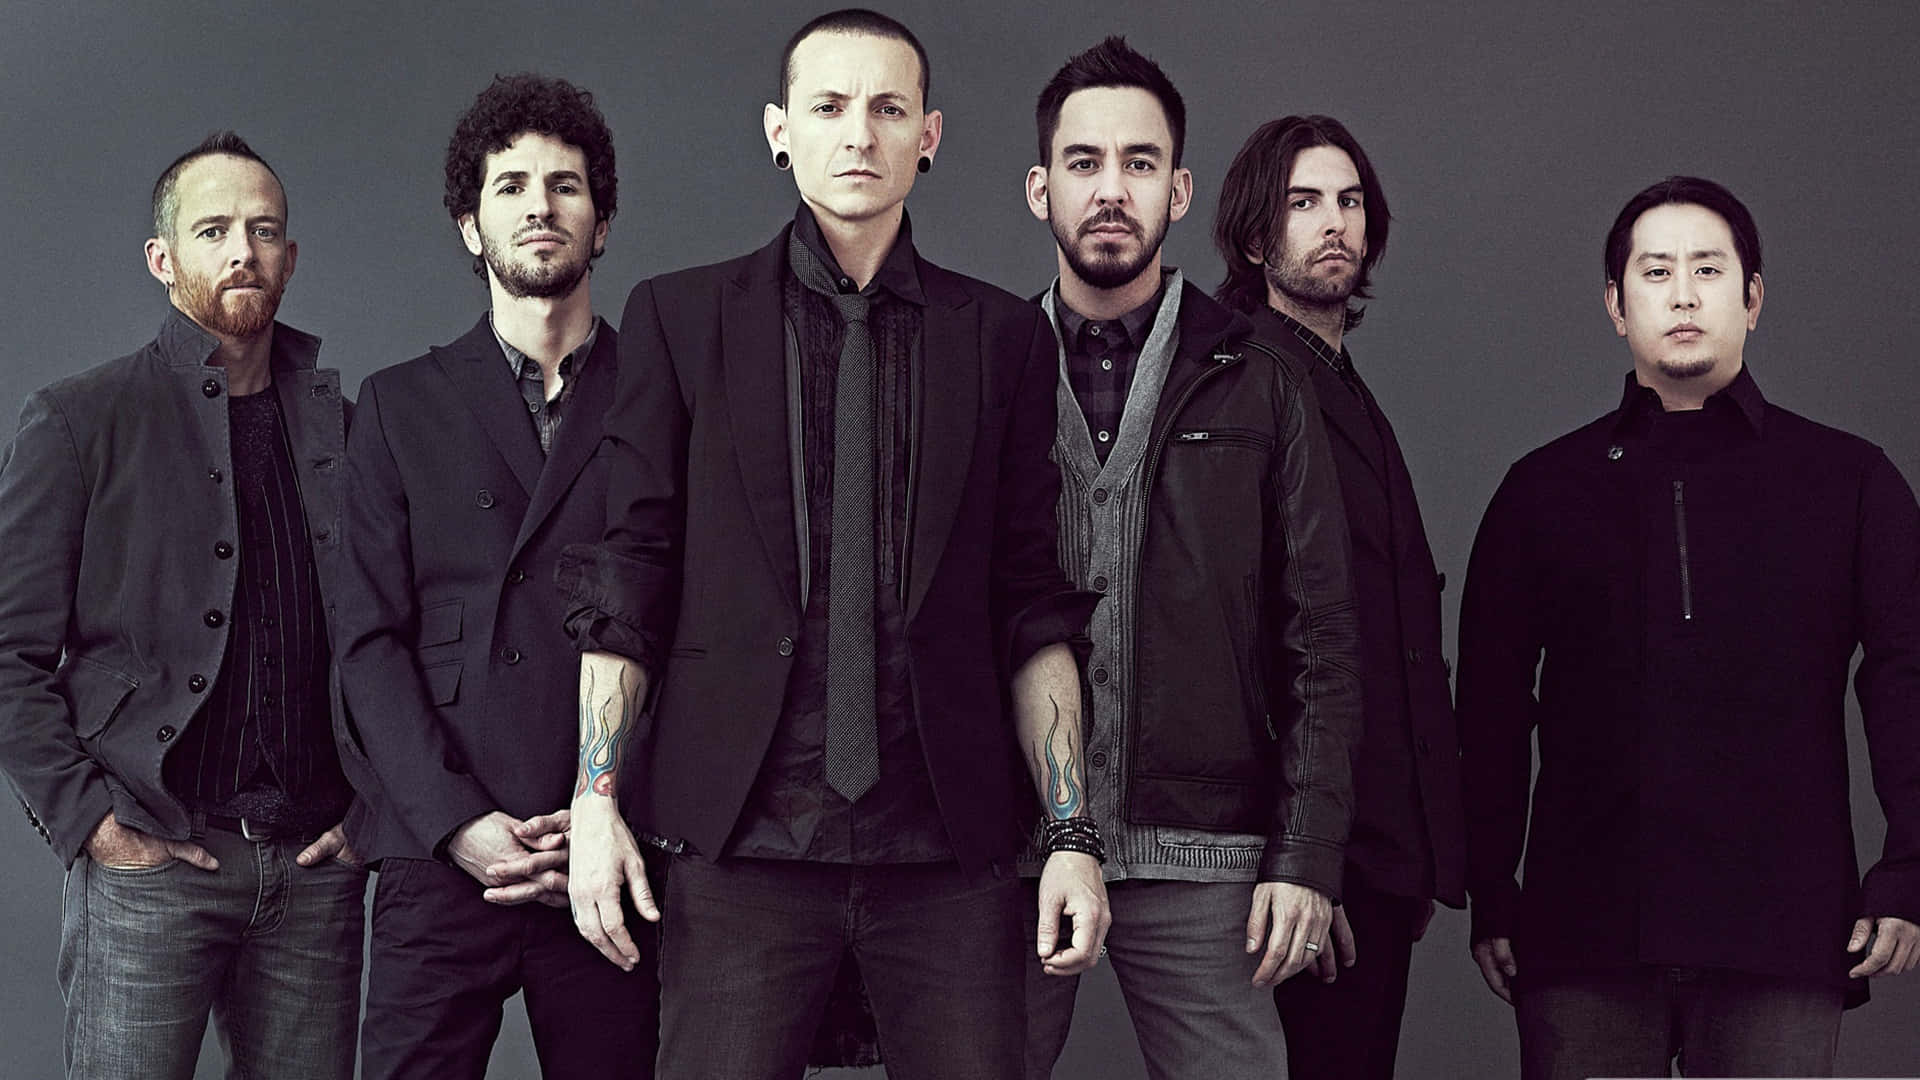 Enav De Mest Ikoniska Rockbanden Genom Tiderna, Linkin Park, Syns Här I All Sin 4k-glans. Wallpaper